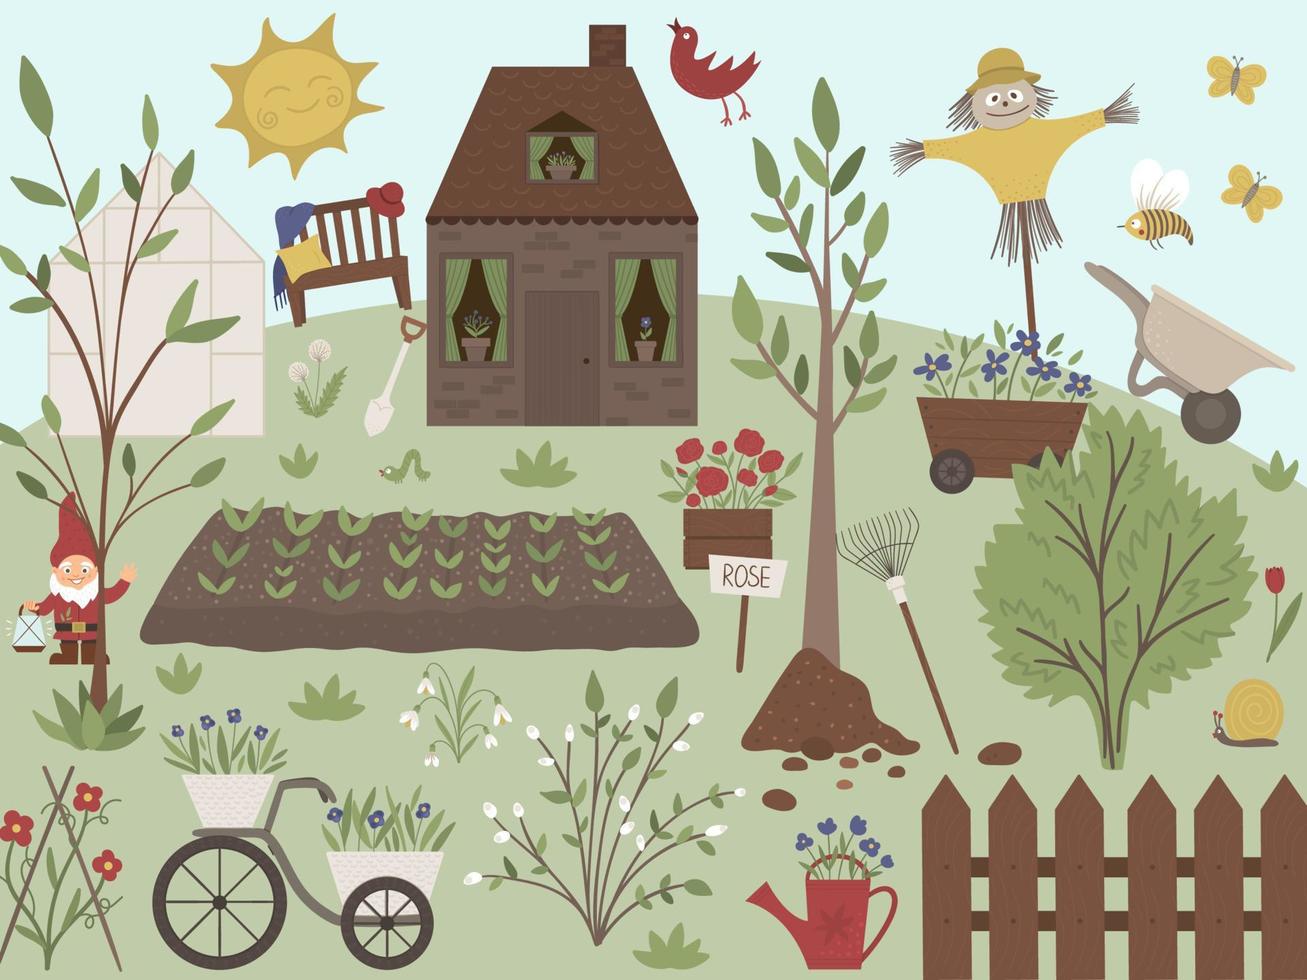 illustration vectorielle de jardin avec outils, fleurs, herbes, plantes. scène printanière plate avec une ferme ou une maison de campagne avec arbres, banc, serre, soleil, matériel de jardinage. vecteur